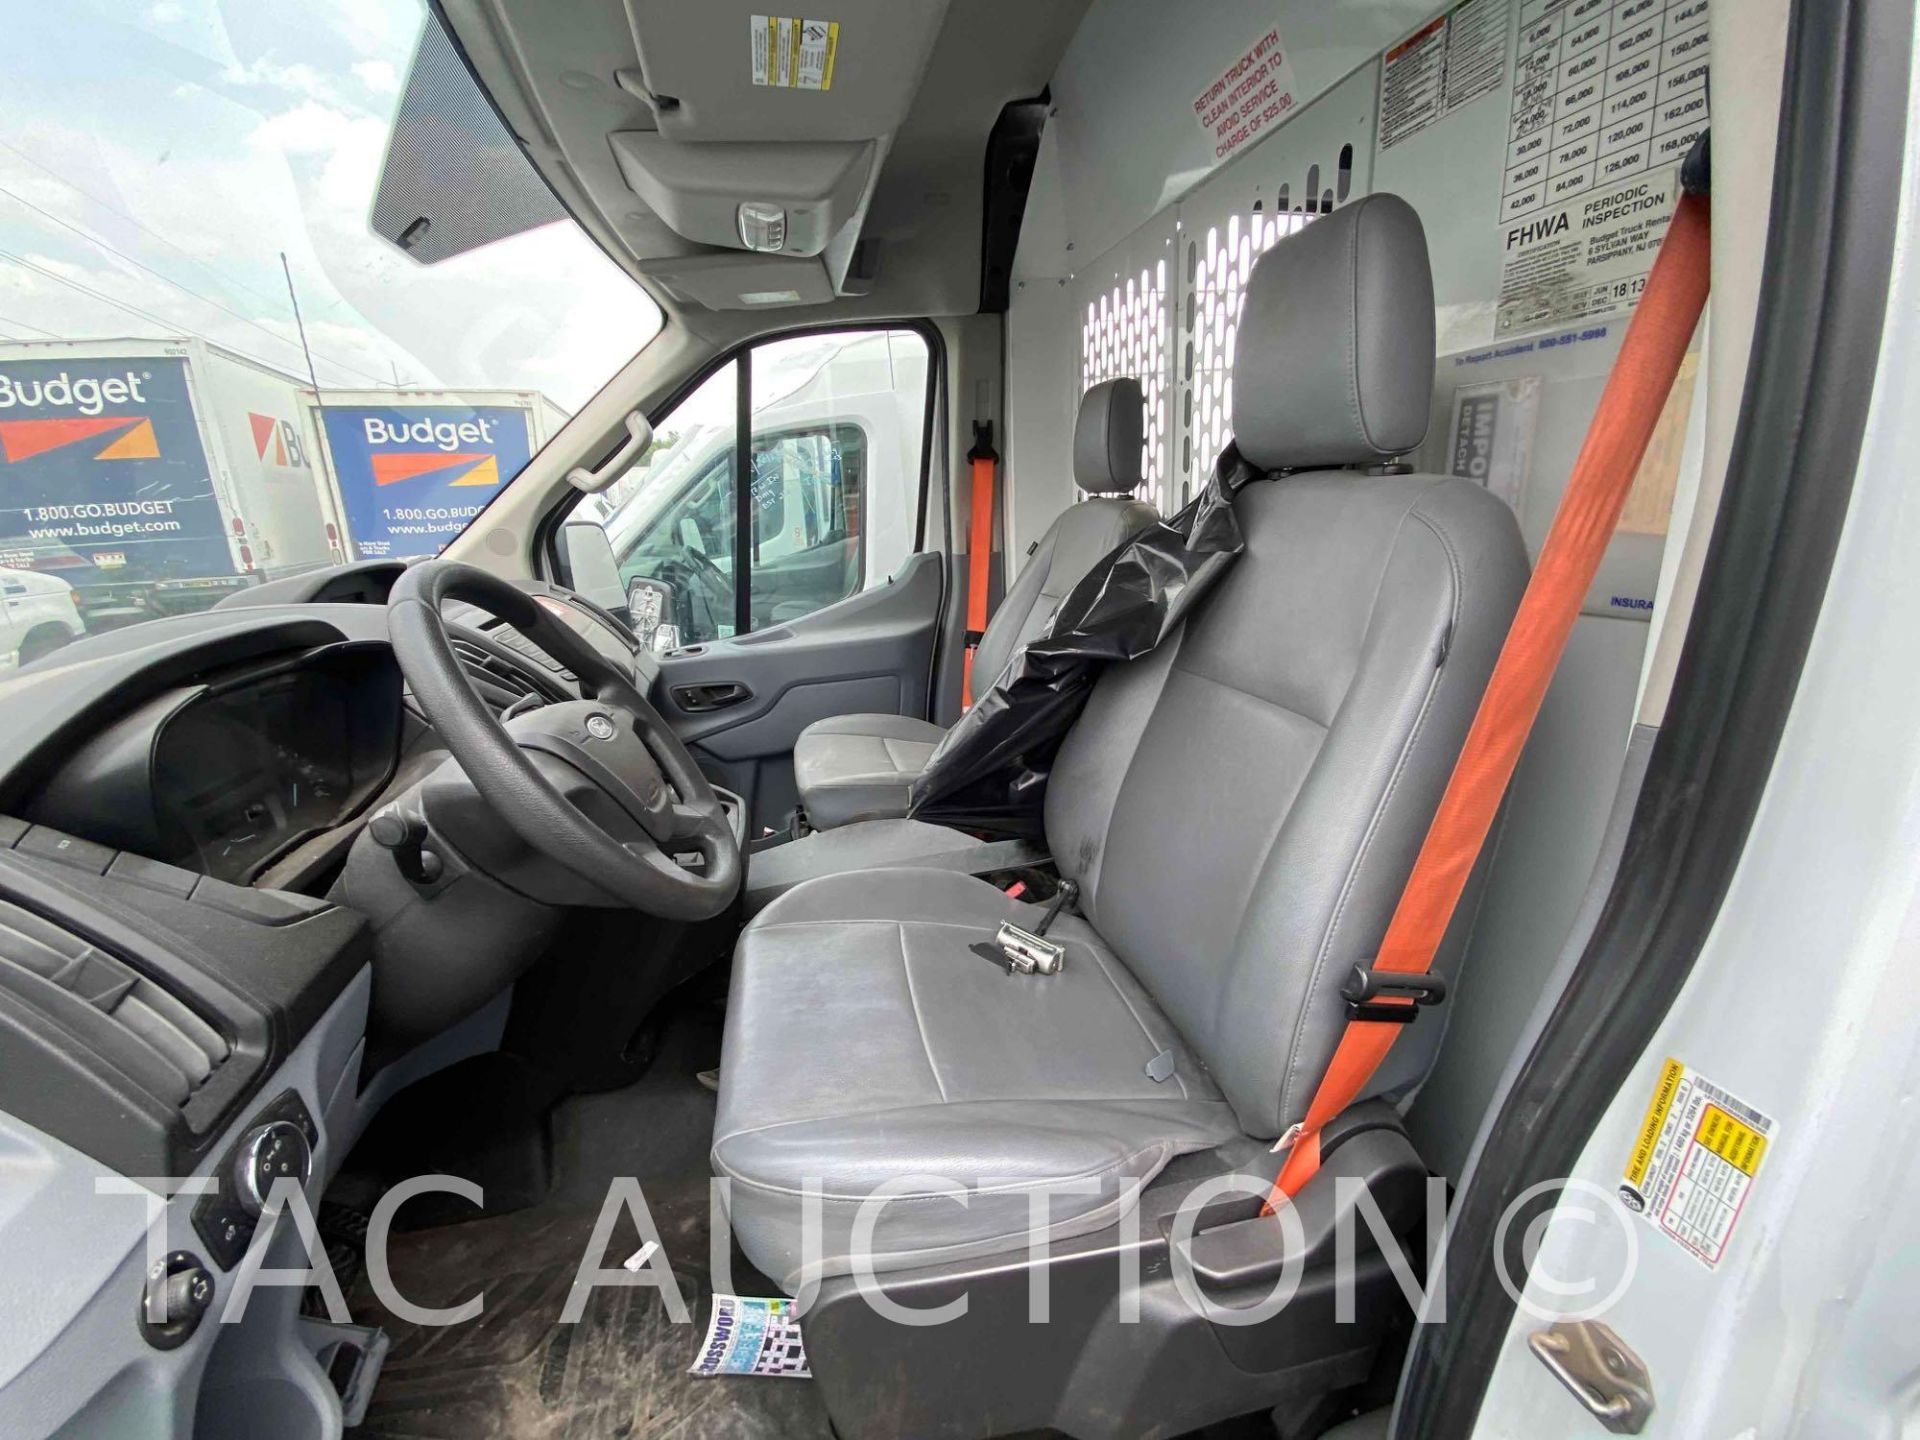 2019 Ford Transit 150 Cargo Van - Image 21 of 42